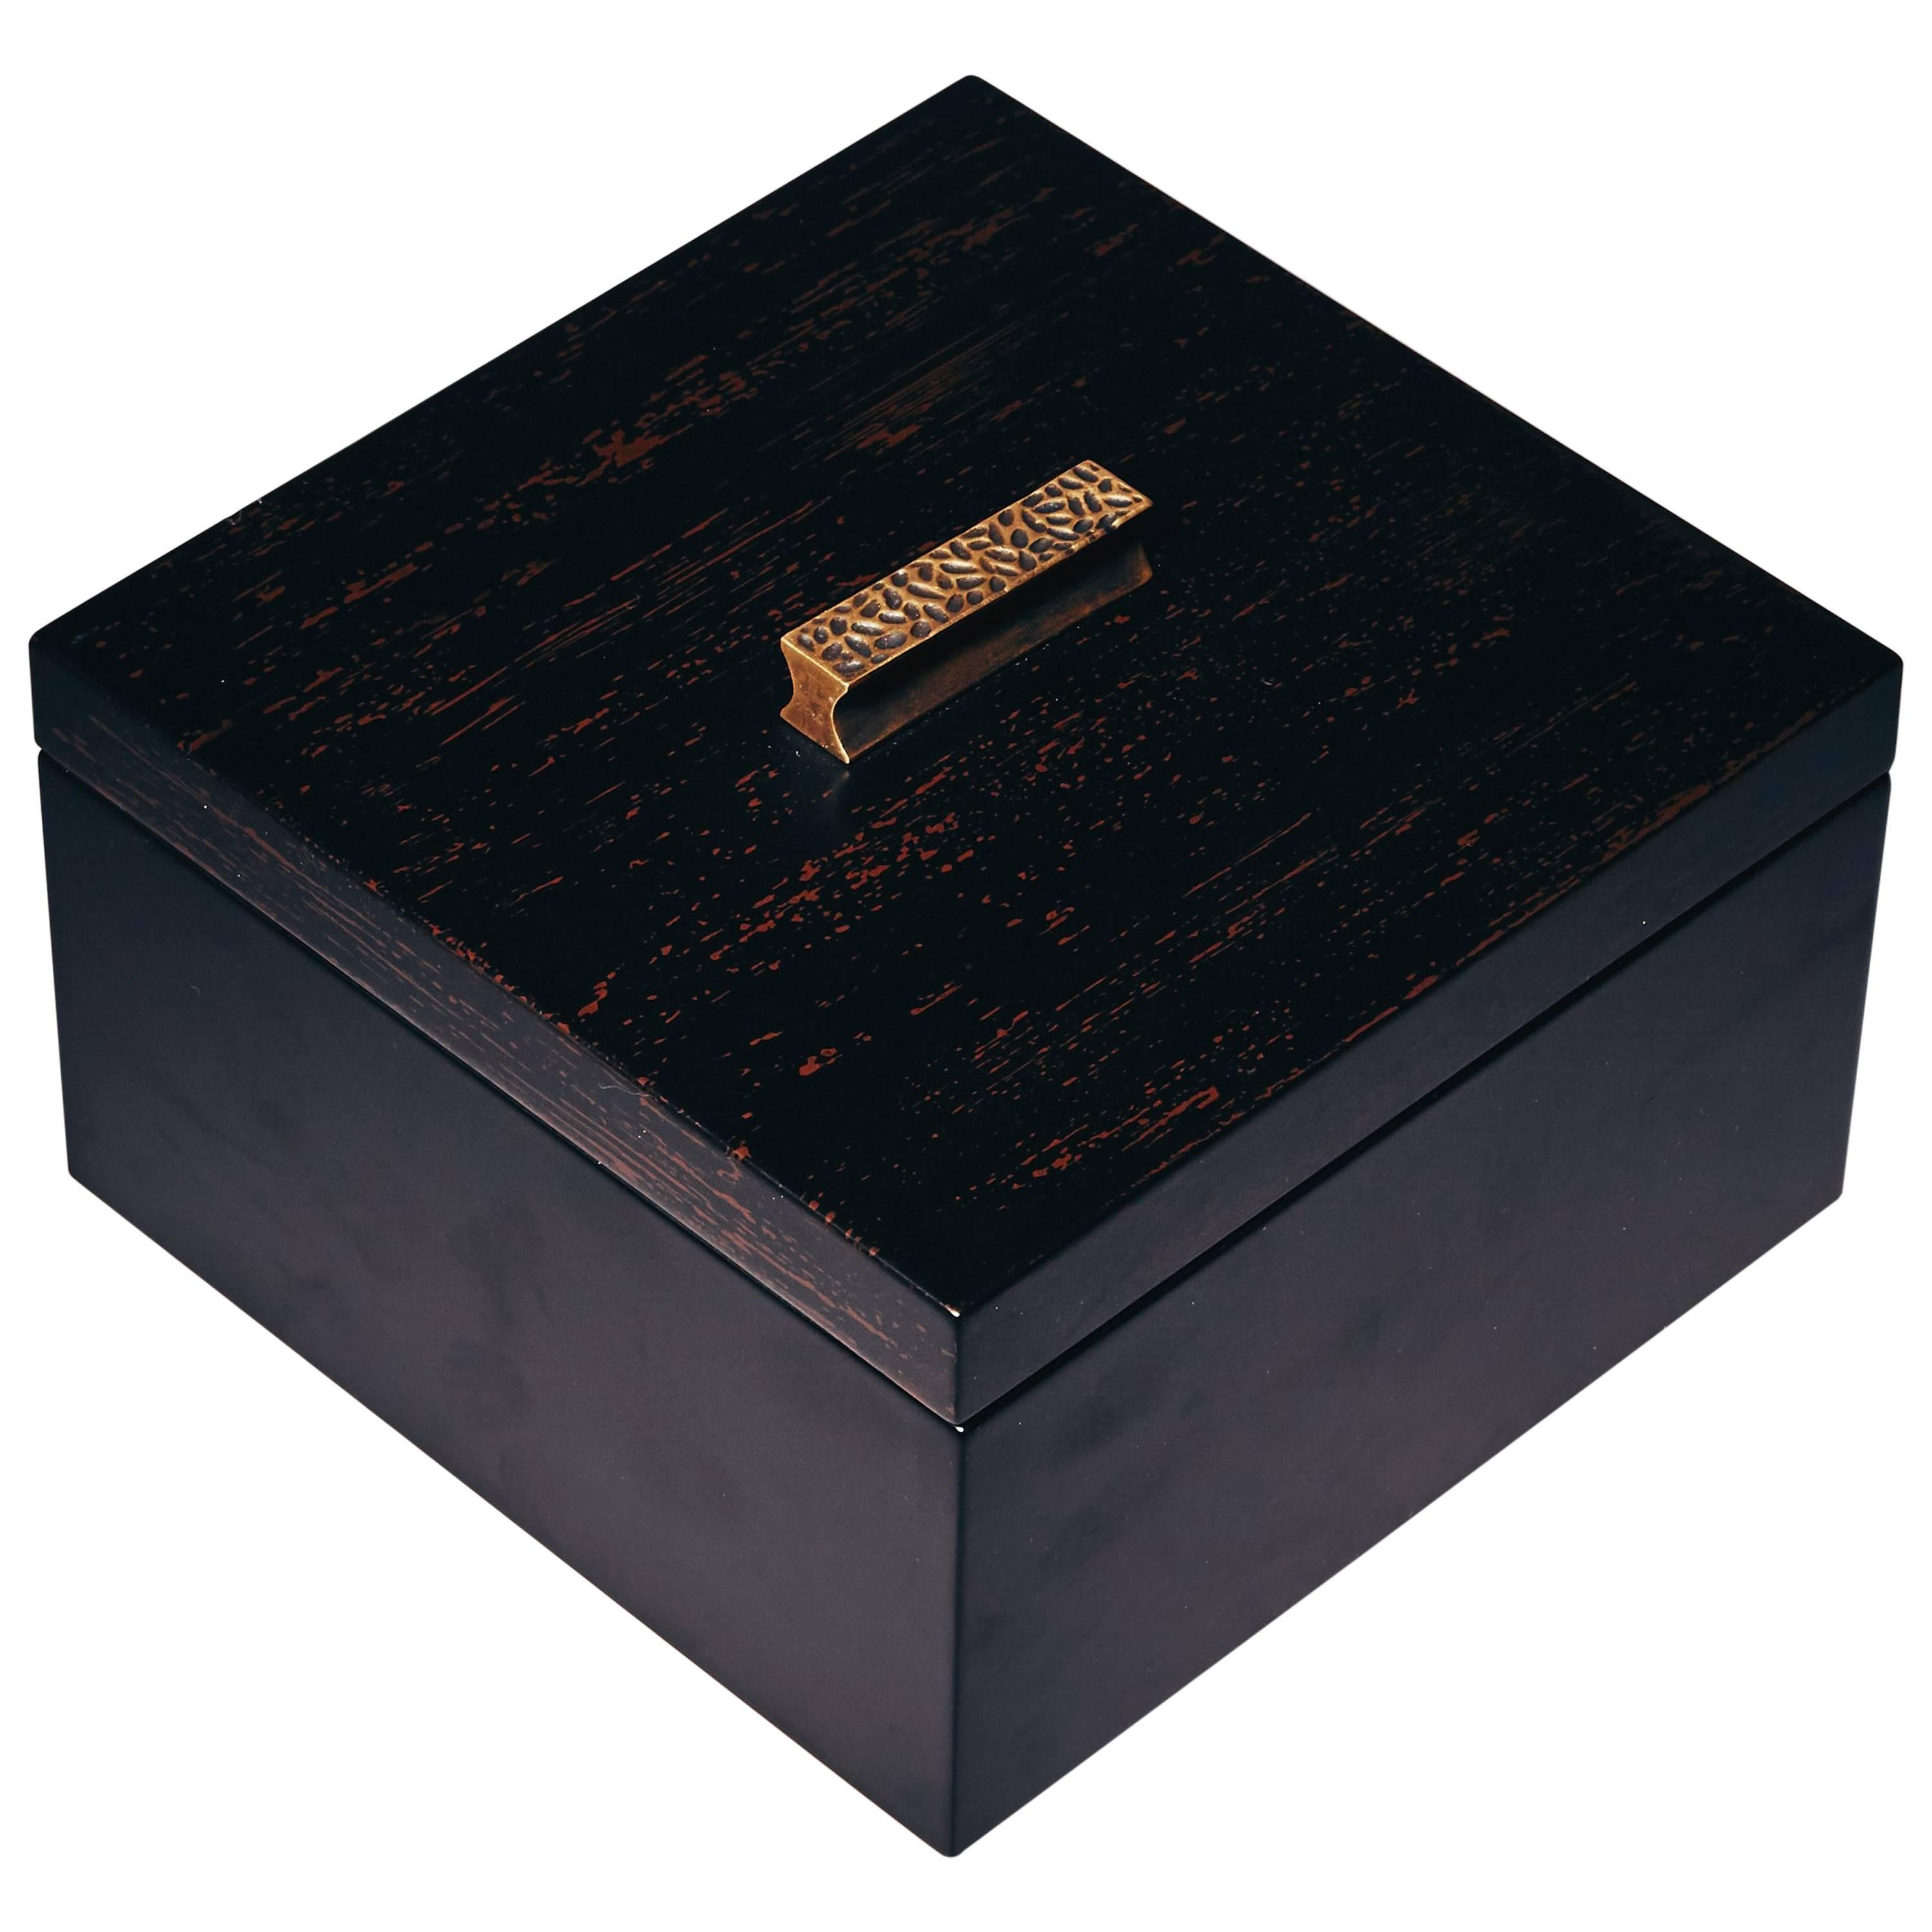 Decorative Boxes, ELLA by Reda Amalou Design, 2016 - Black & Brown Lacquer For Sale